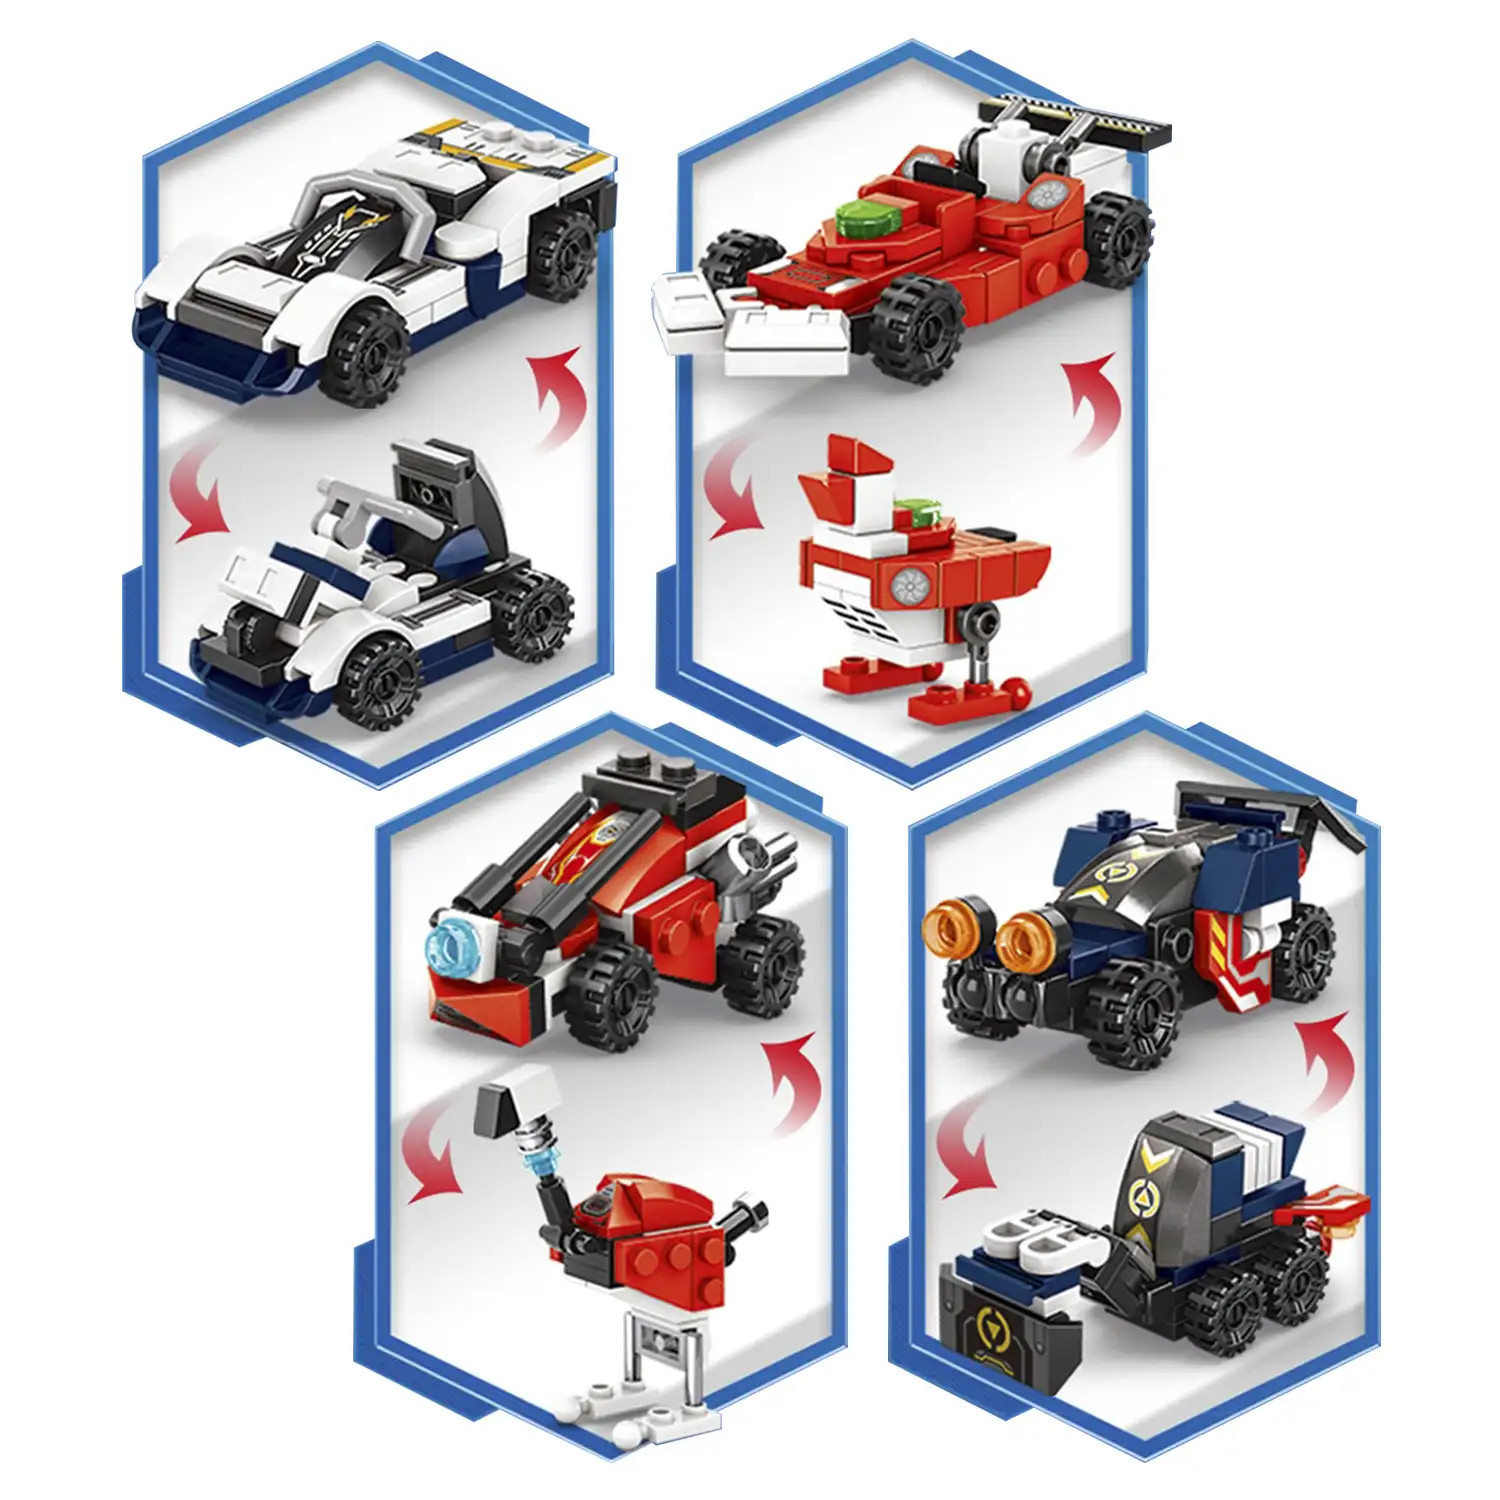 Robot 8 en 1 y tractor 2 formas, cada modelo 2 formas 378 piezas